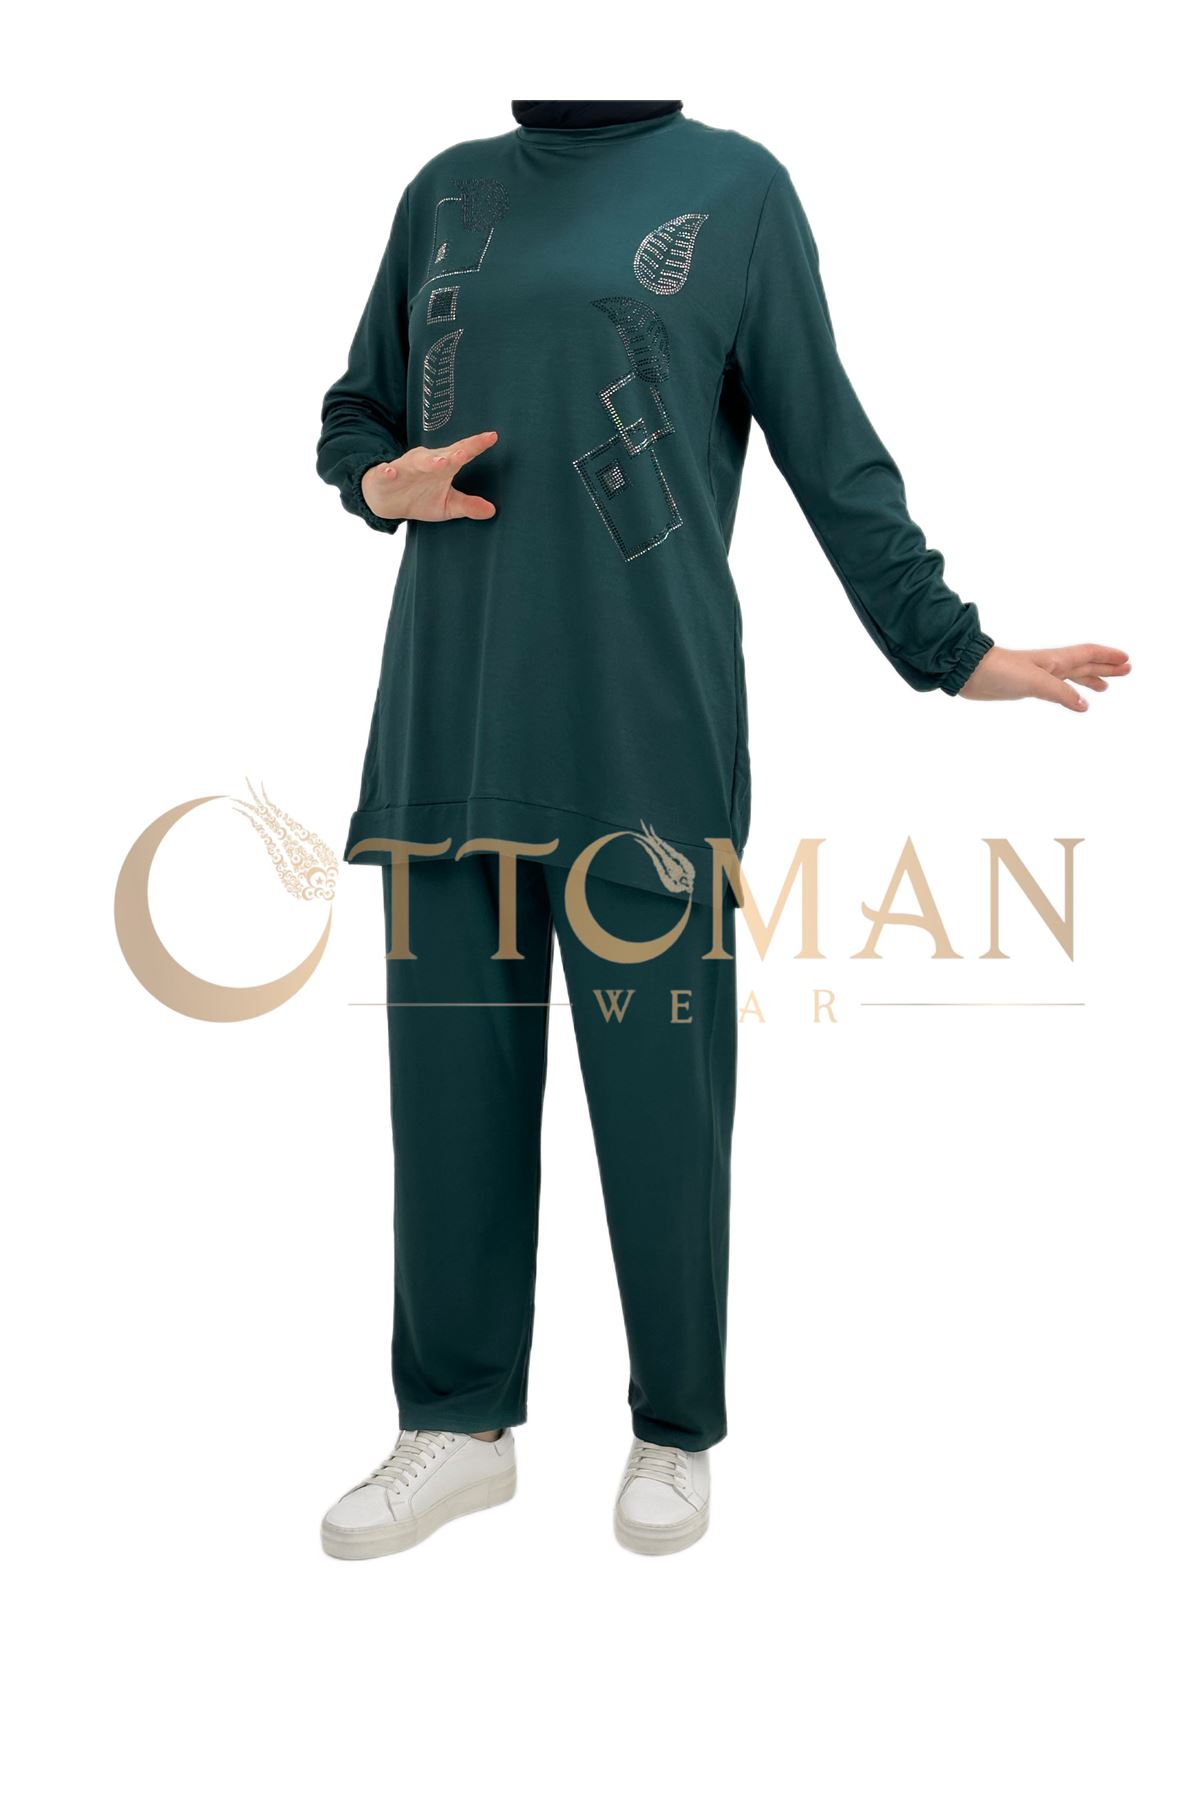 OTW005 Geometrik Desenli Pantolonlu Takım Zümrüt